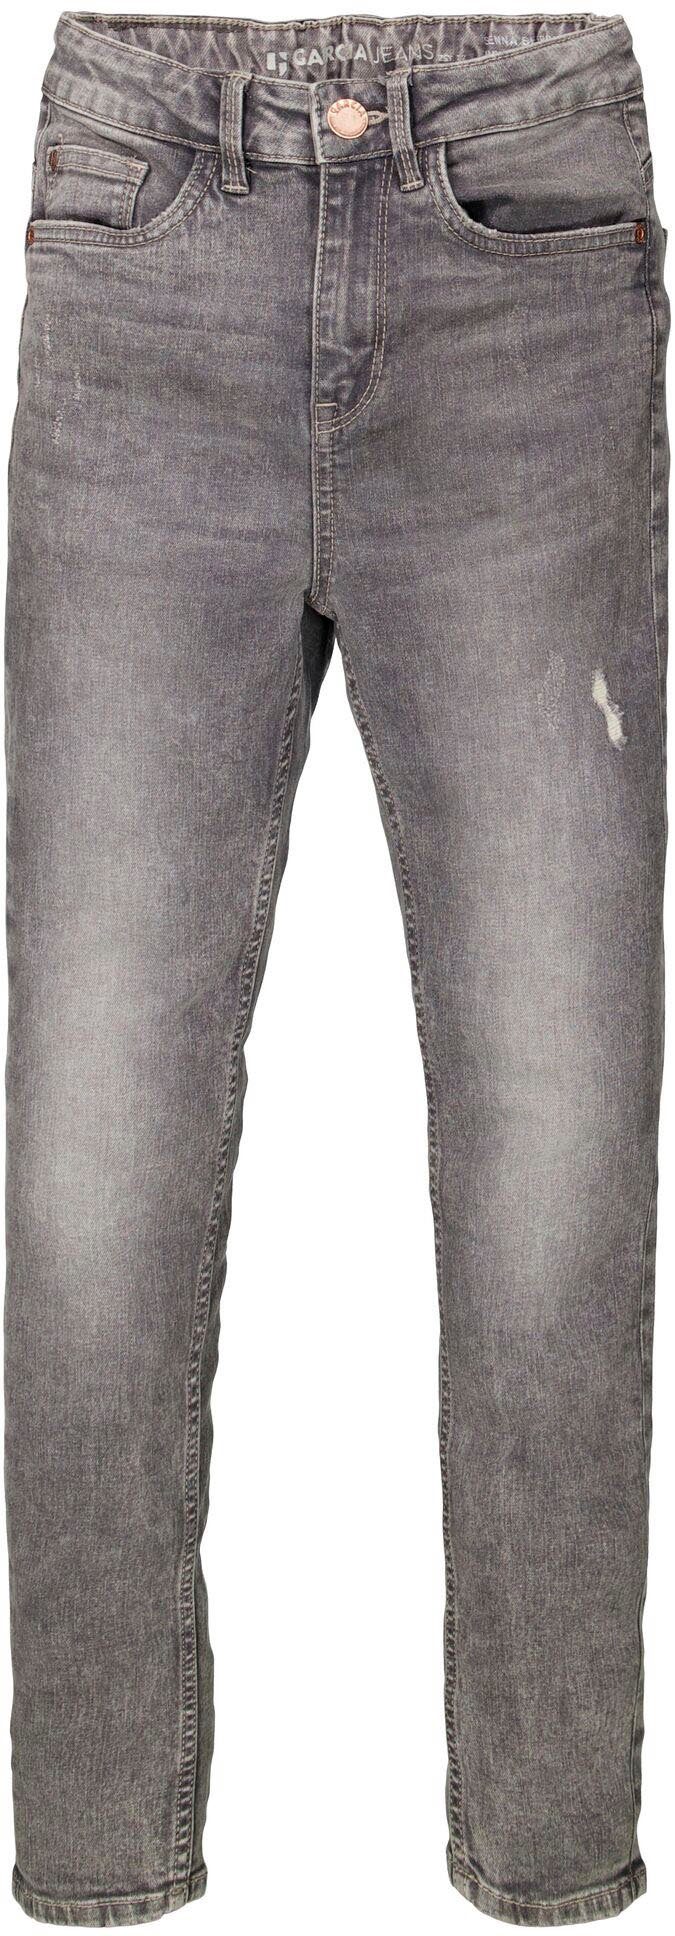 Garcia Stretch-Jeans Sienna 565, Passform Sehr und hohe Taille schmalen